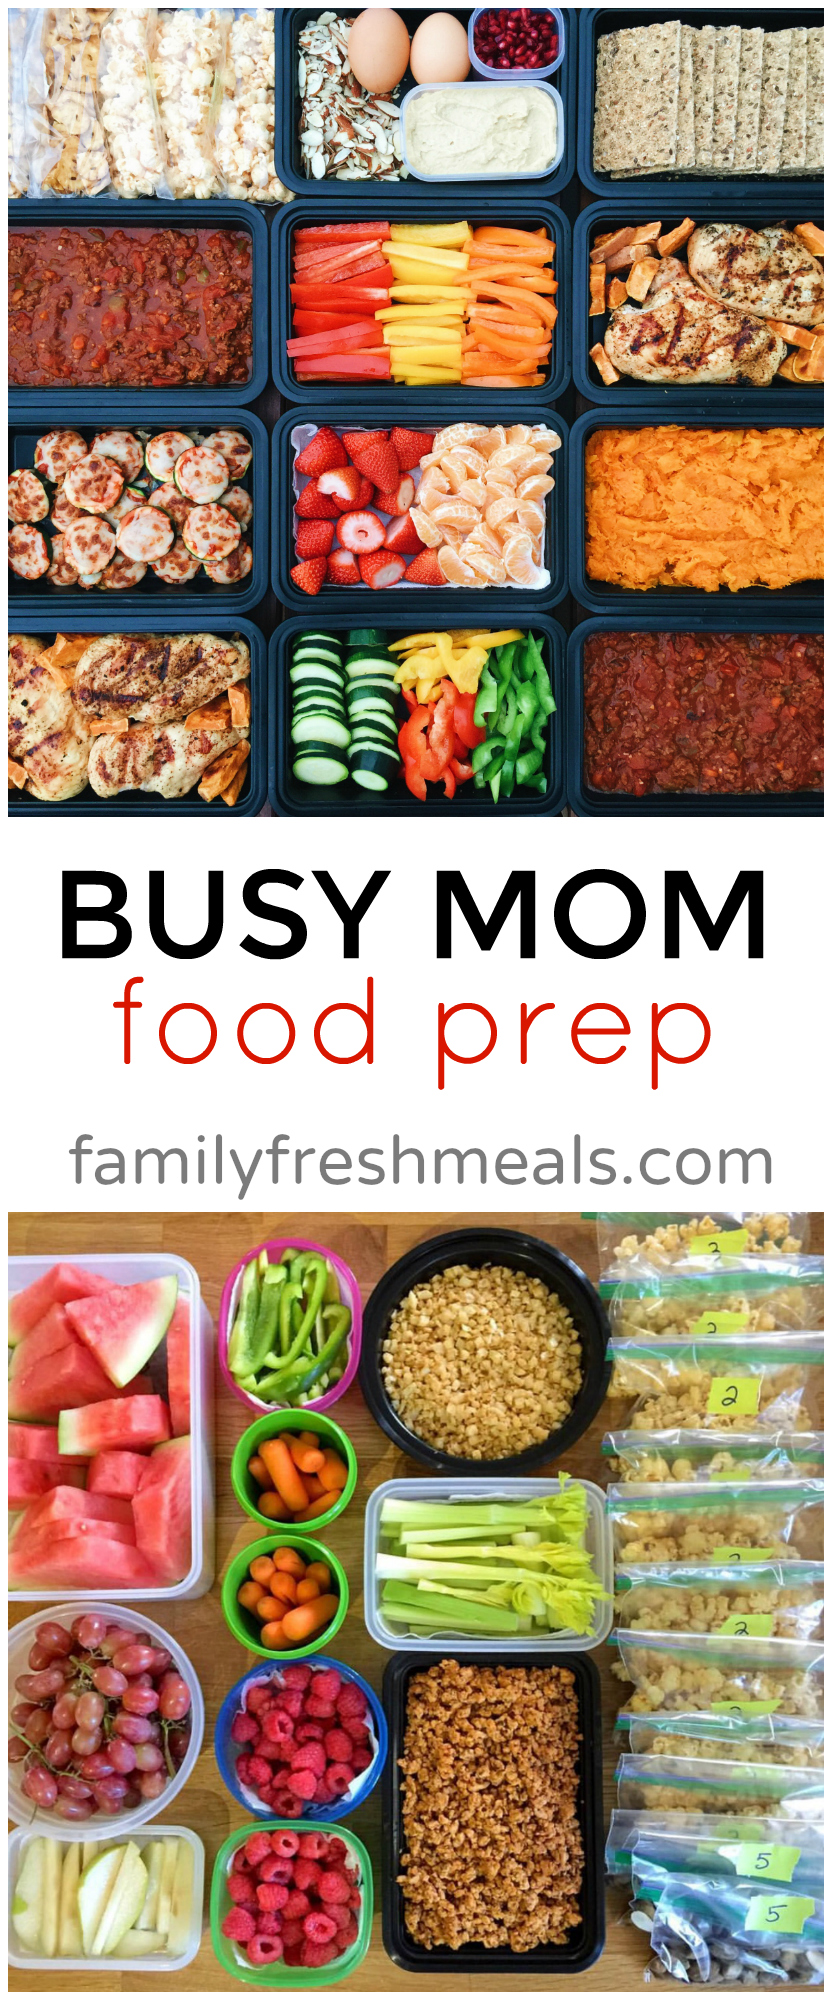 The Busy Mom Food Prep via @familyfresh